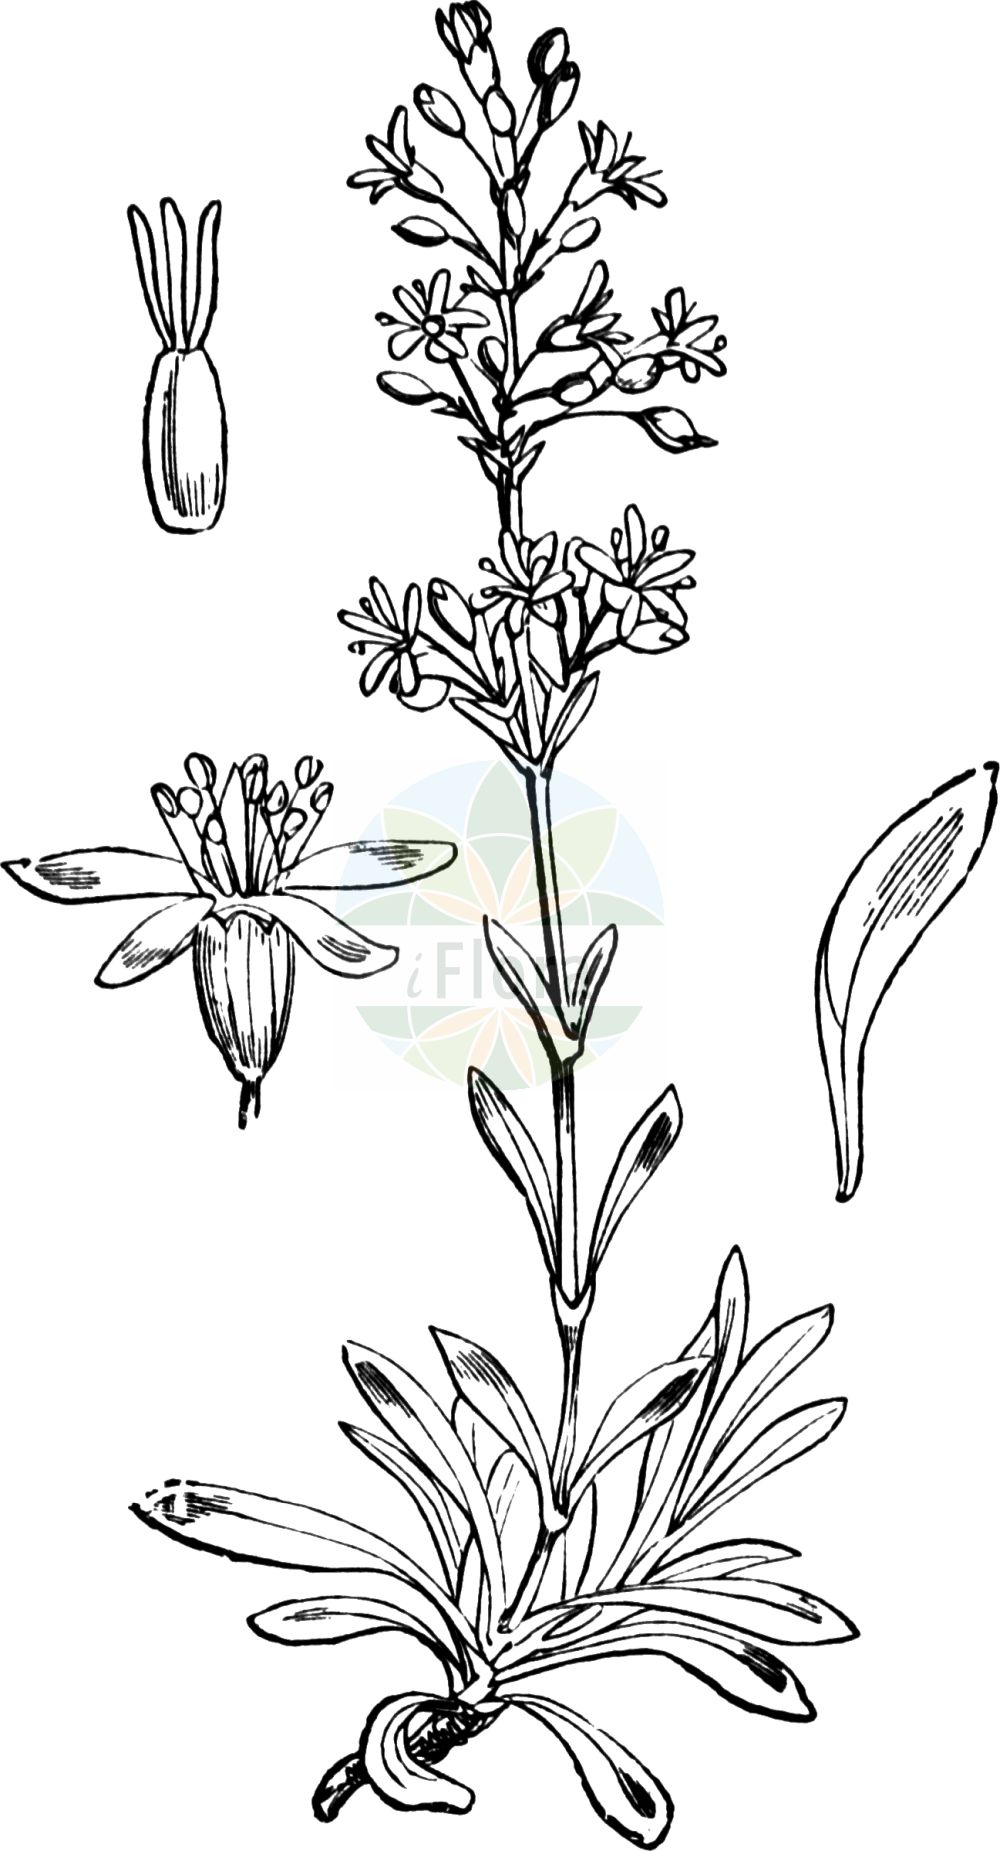 Historische Abbildung von Silene otites (Ohrlöffel-Leimkraut - Spanish Catchfly). Das Bild zeigt Blatt, Bluete, Frucht und Same. ---- Historical Drawing of Silene otites (Ohrlöffel-Leimkraut - Spanish Catchfly). The image is showing leaf, flower, fruit and seed.(Silene otites,Ohrlöffel-Leimkraut,Spanish Catchfly,Cucubalus otites,Otites polaris,Otites pseudotites,Silene otites (L.) Wibel,Silene otites,Ohrloeffel-Leimkraut,Spanish Catchfly,Silene,Leimkraut,Campion,Caryophyllaceae,Nelkengewächse,Pink family,Blatt,Bluete,Frucht,Same,leaf,flower,fruit,seed,Fitch et al. (1880))